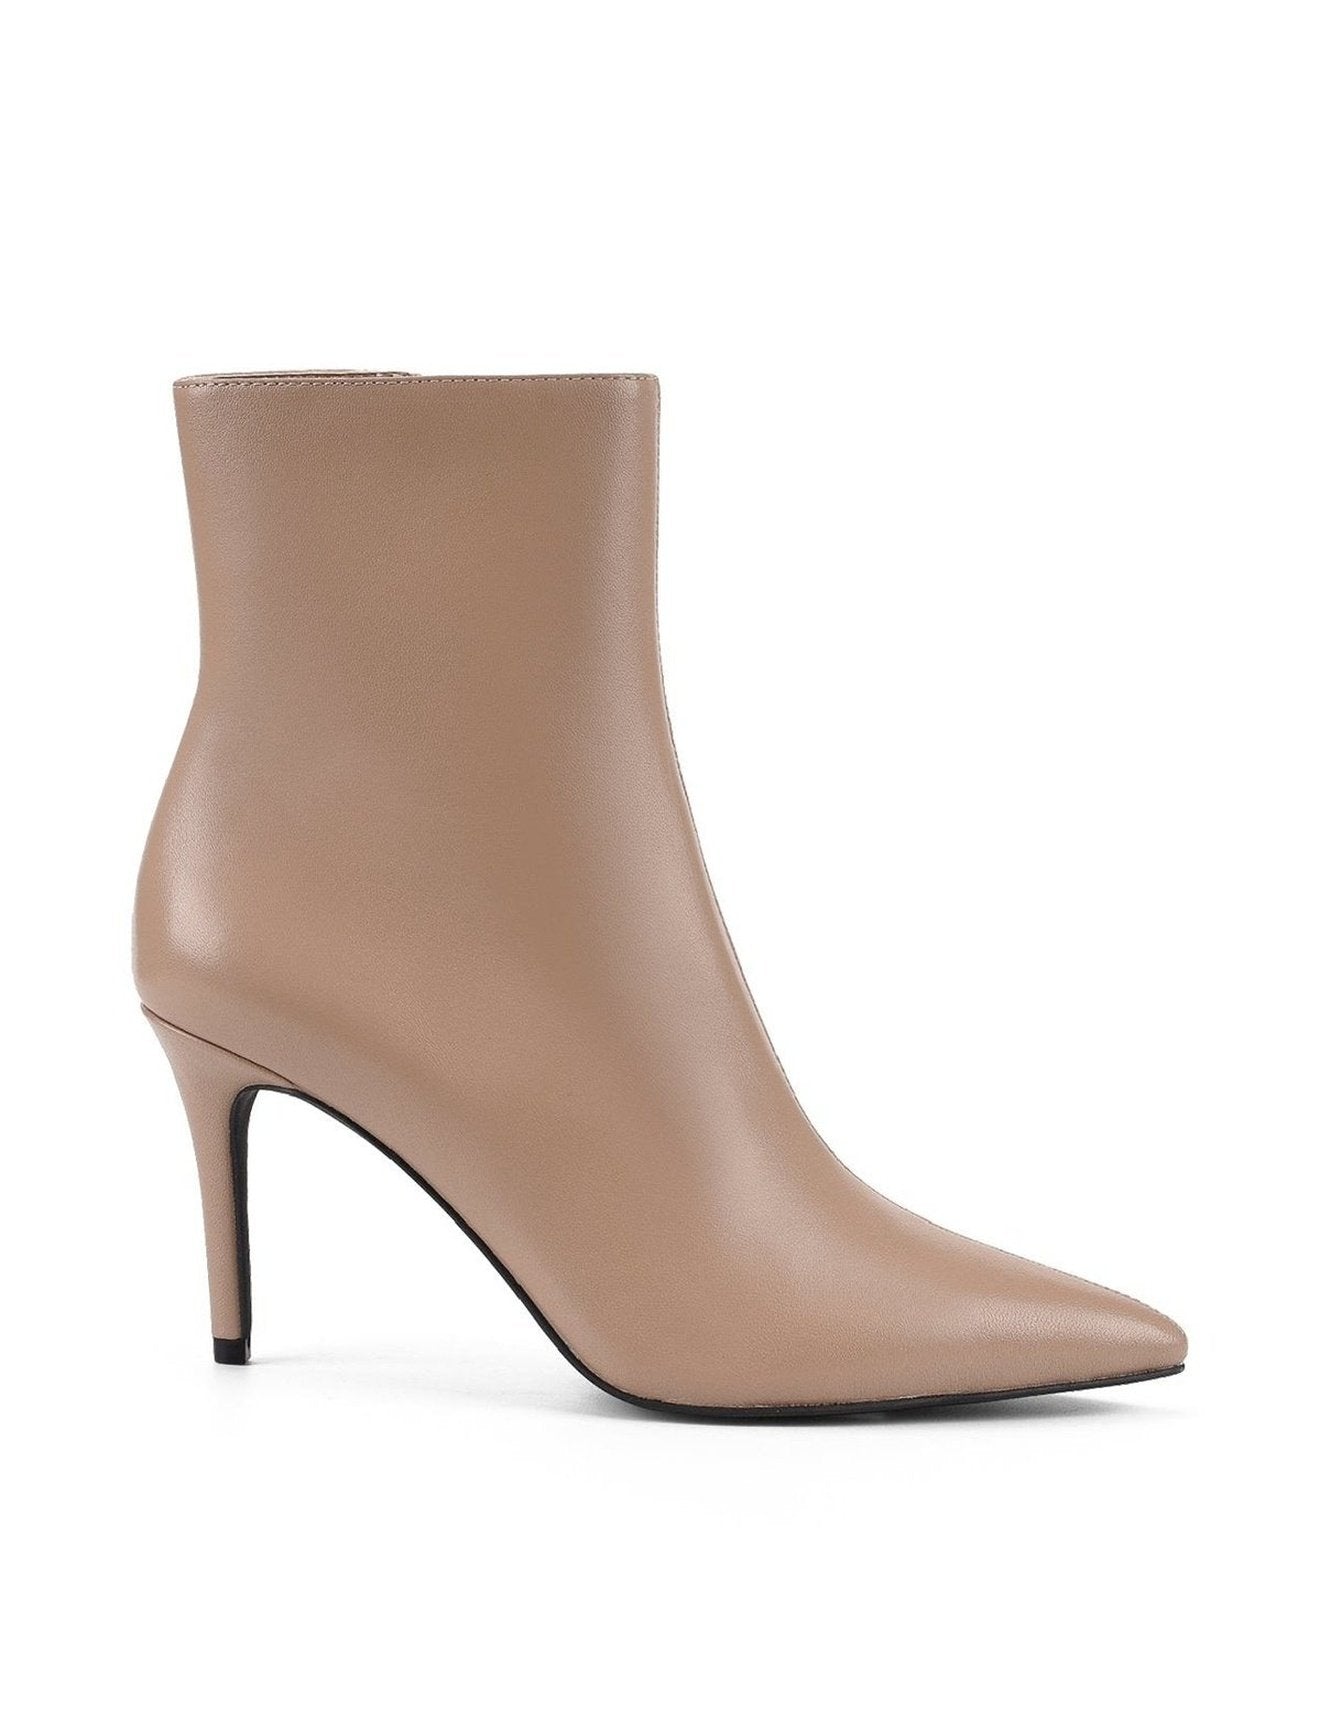 Wisp Ankle Boots - Mushroom Leather